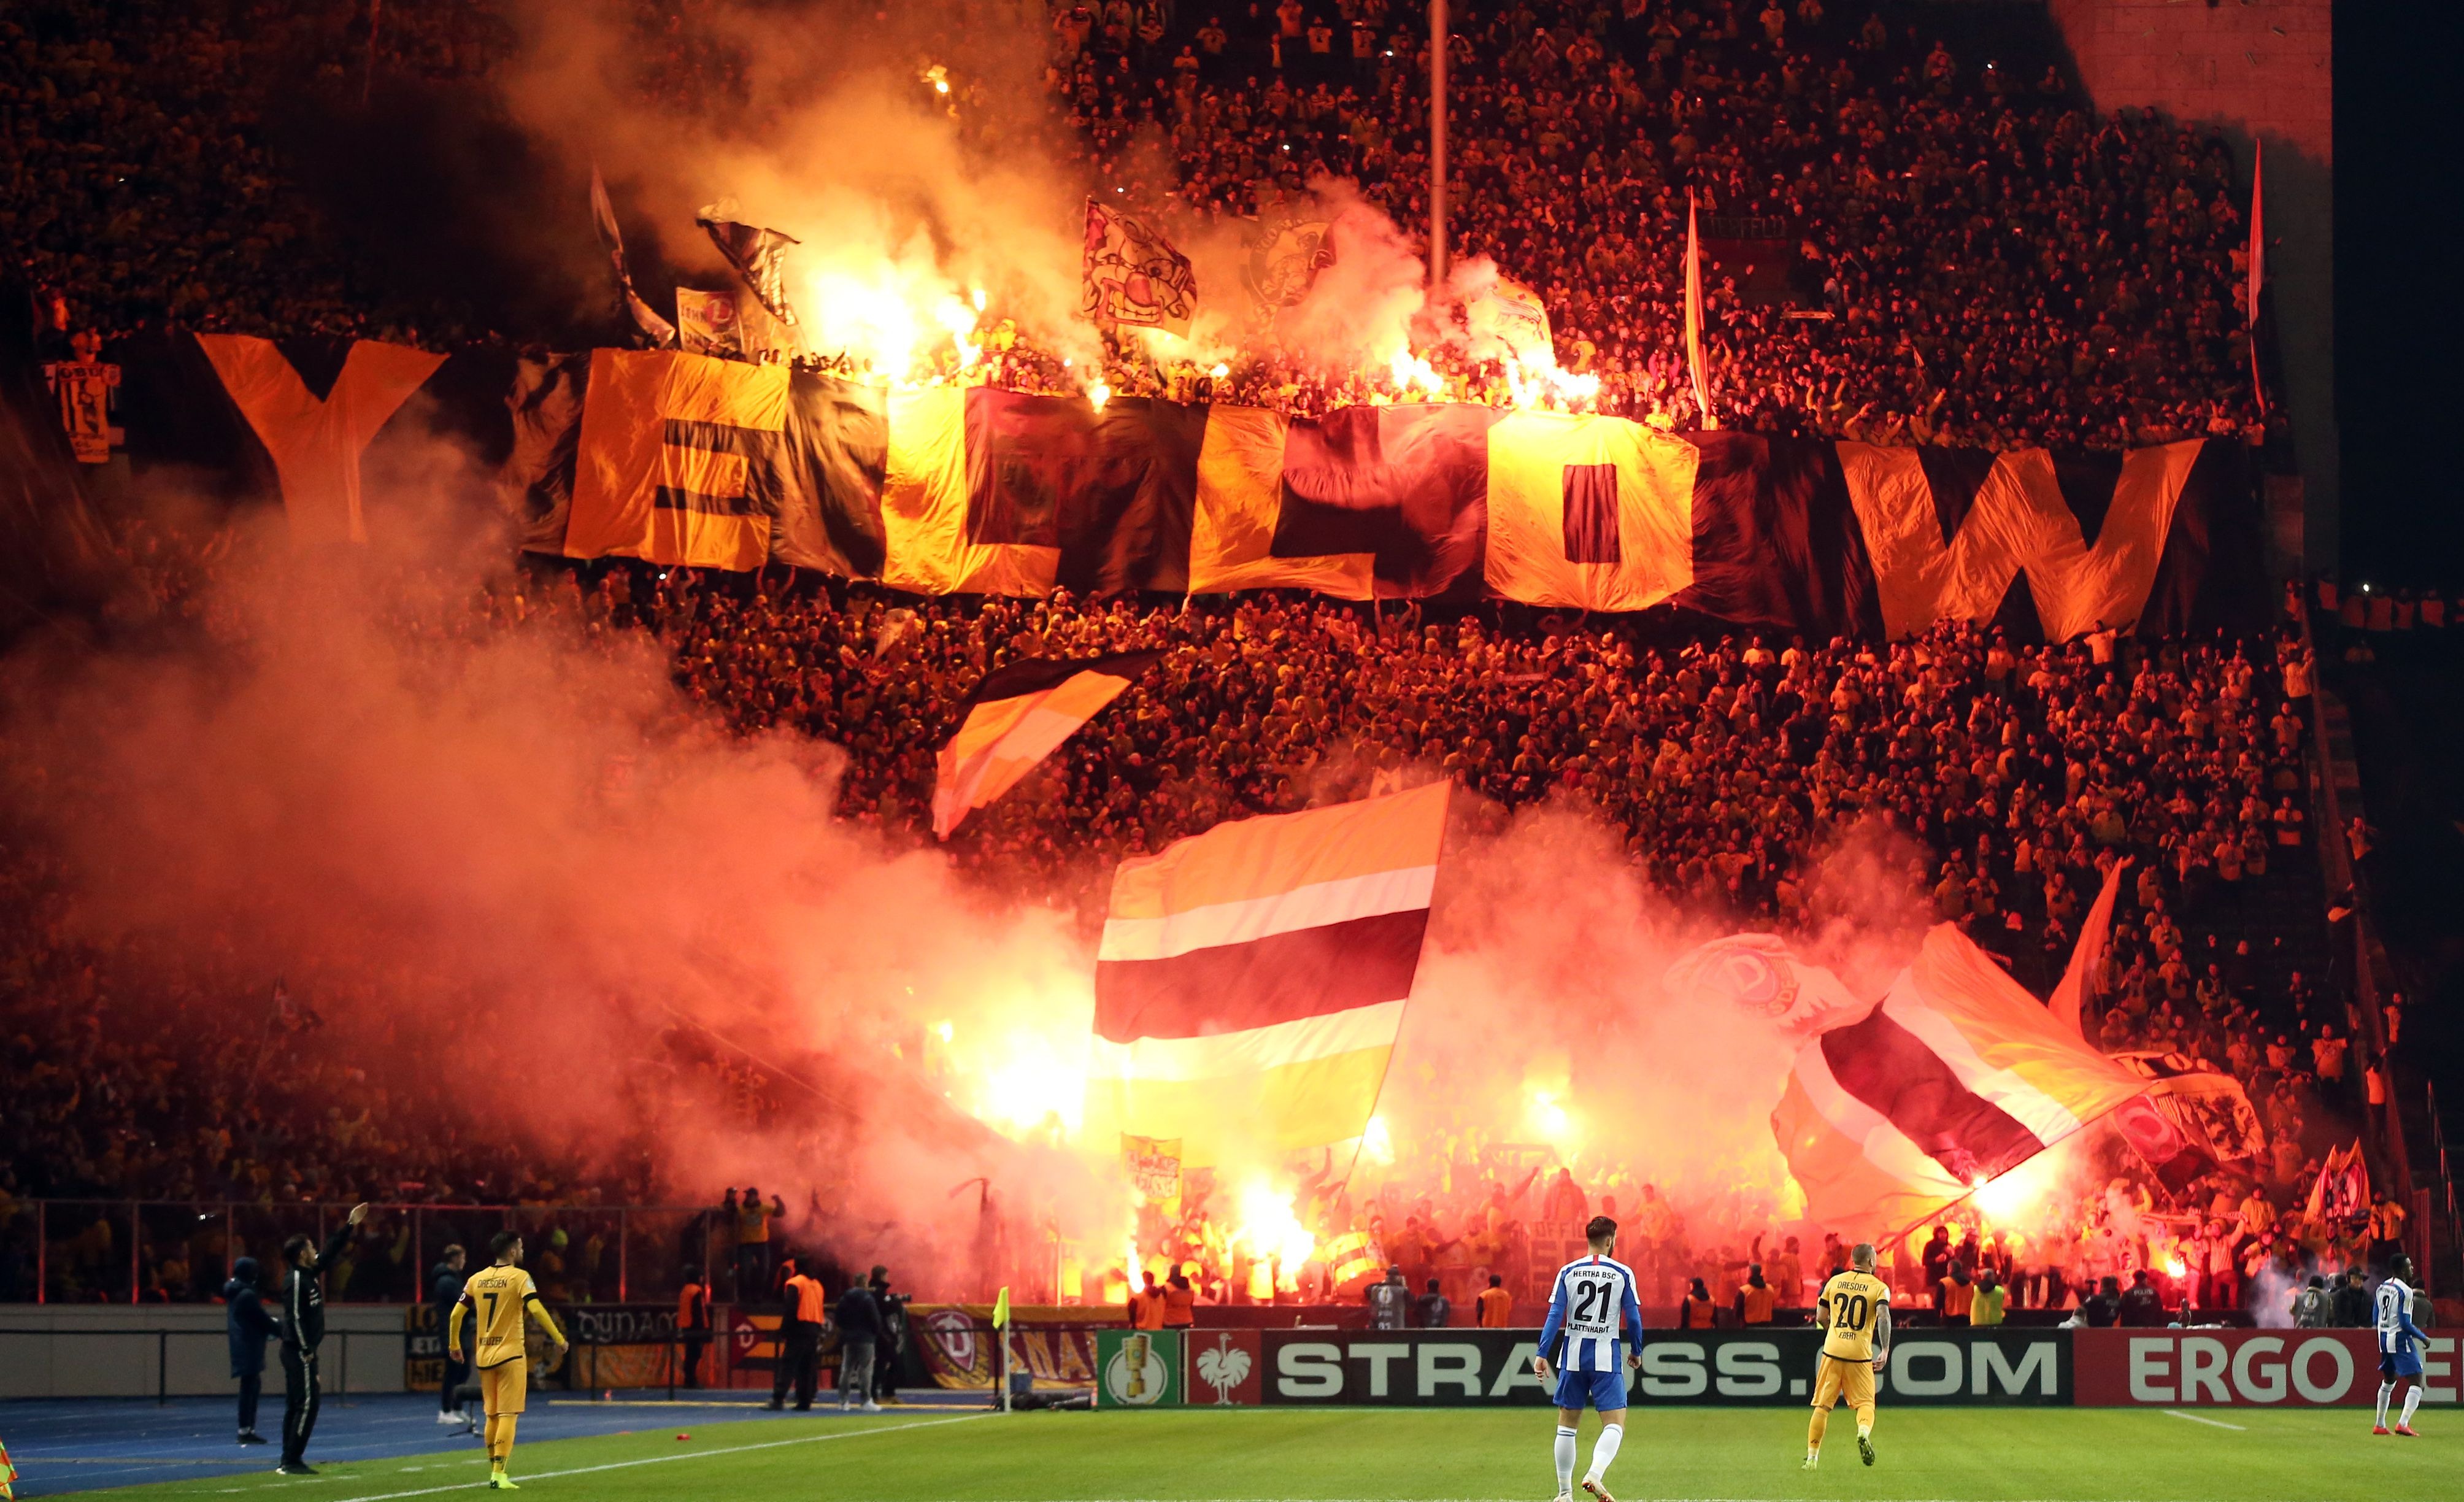 Fackeln in der Menge während eines Aufeinandertreffens zwischen Hertha BSC Berlin und SG Dynamo Dresden